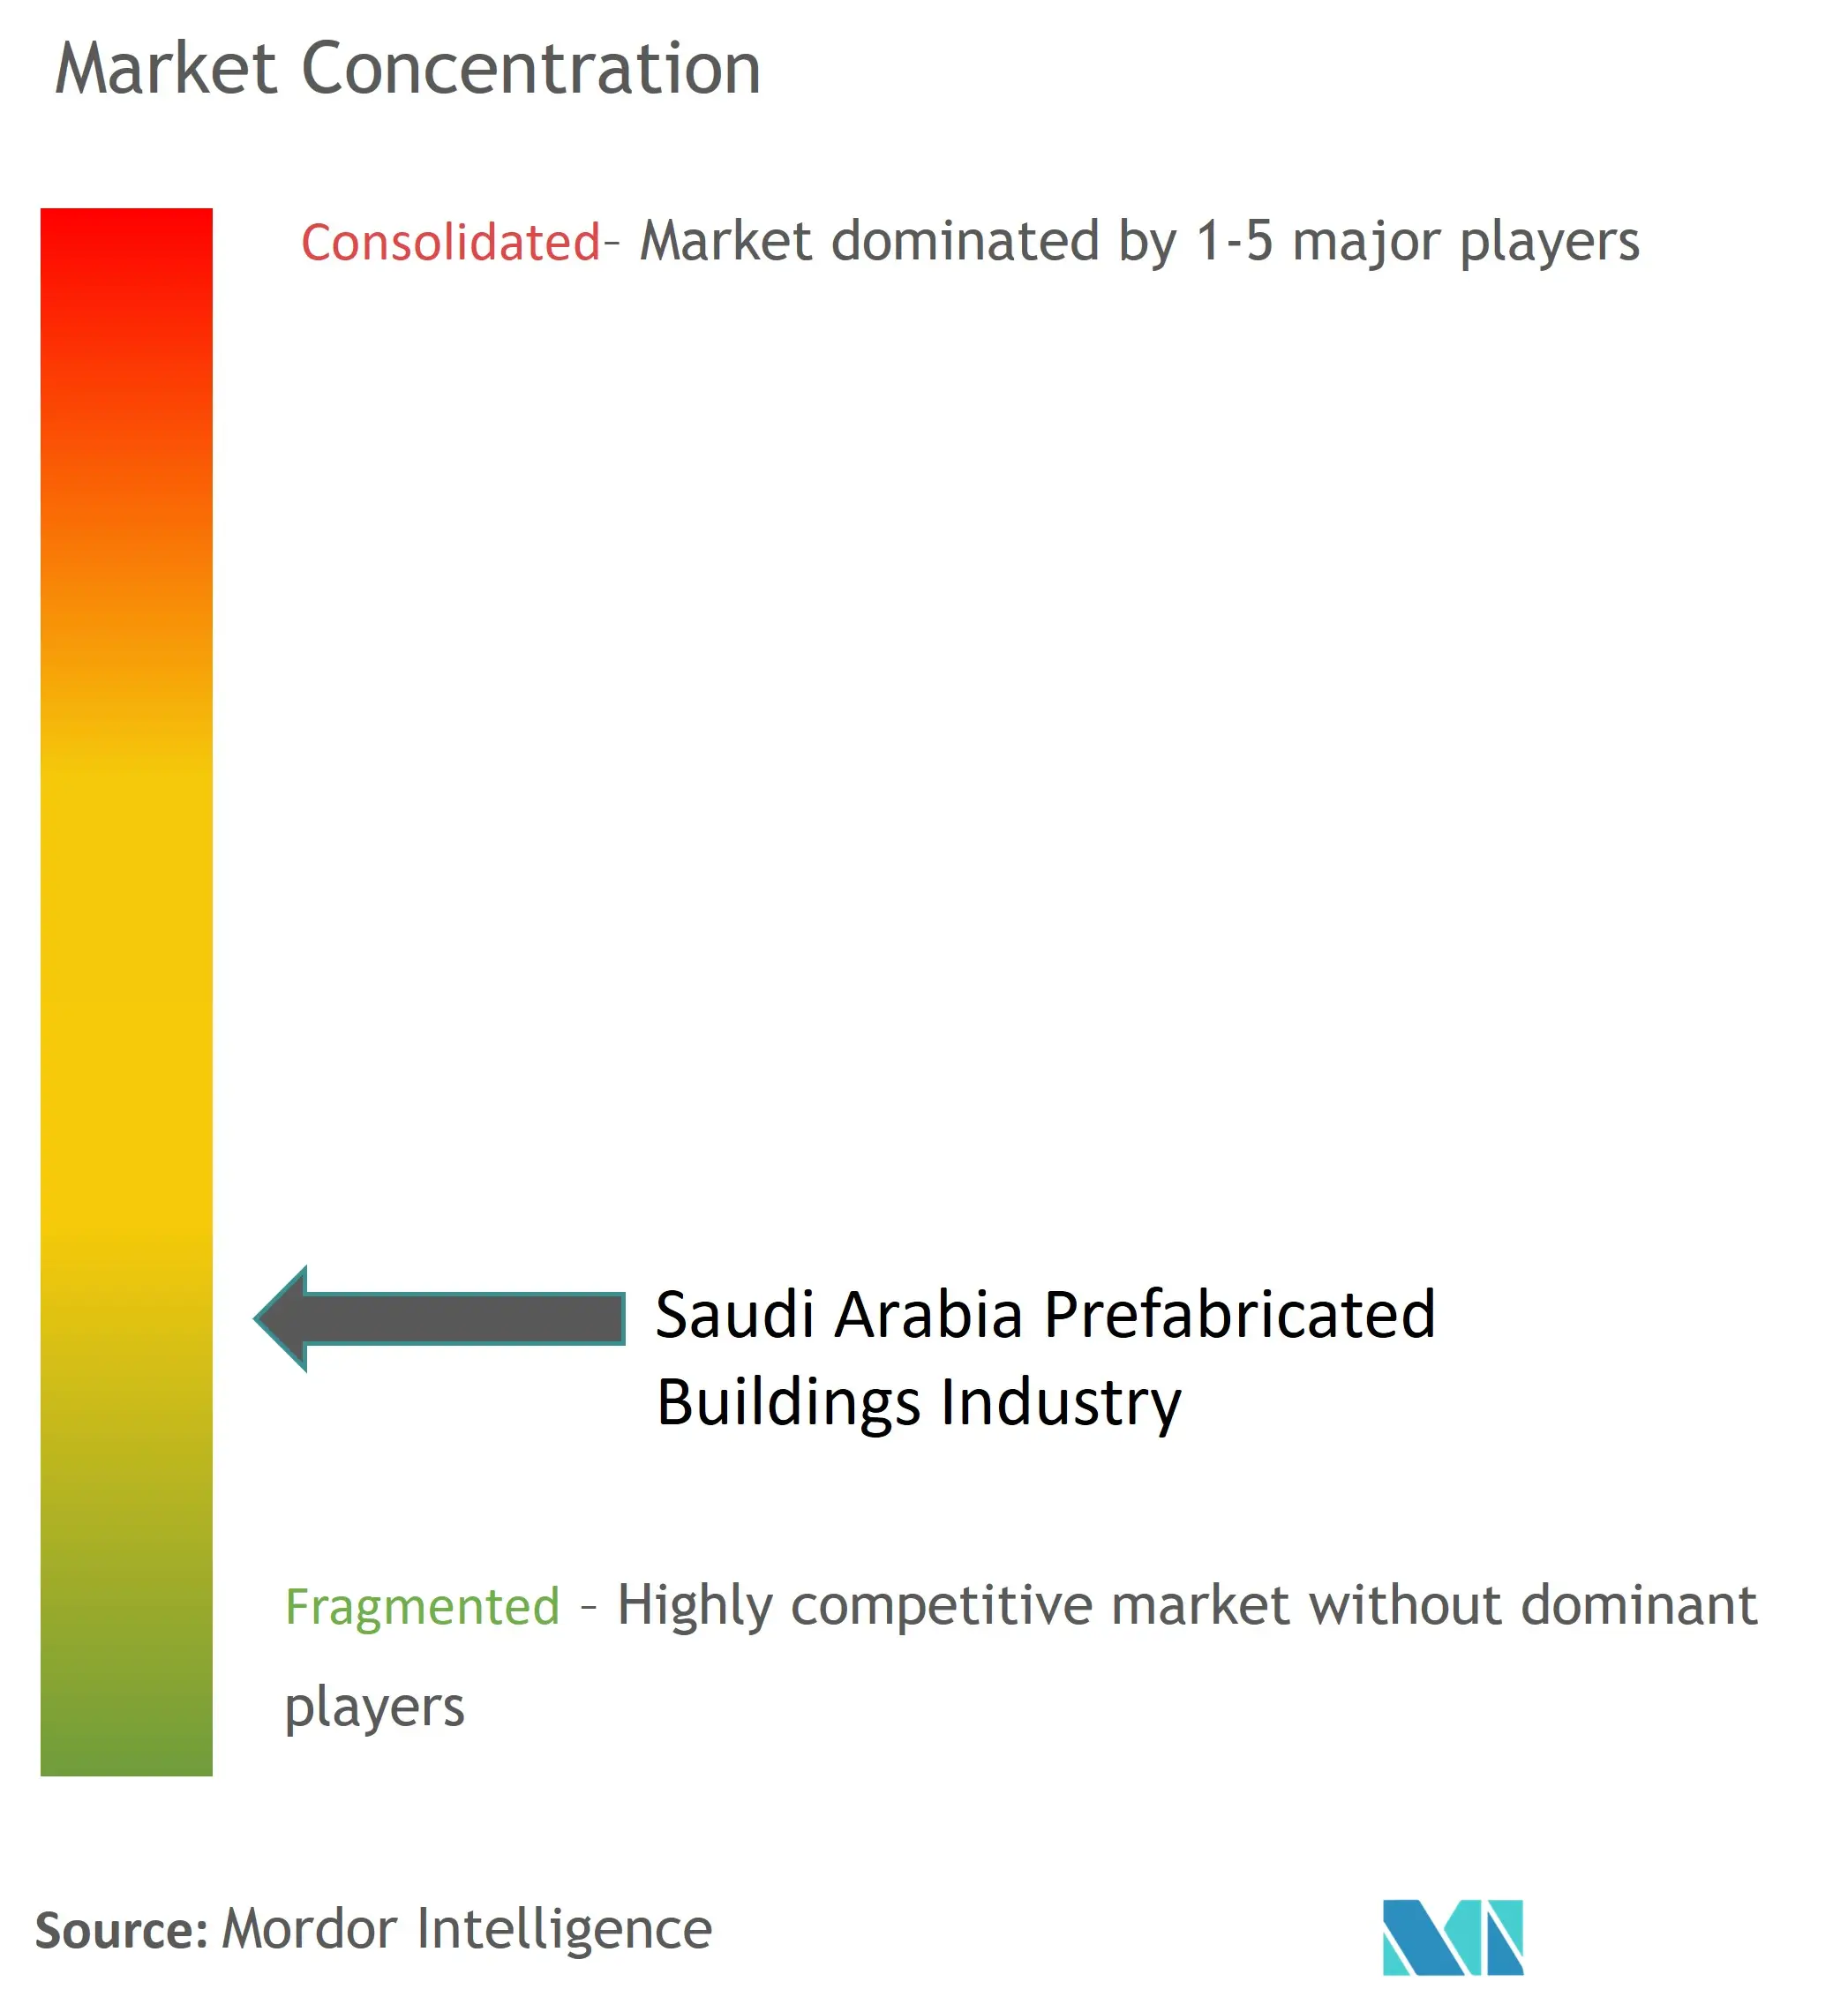 Concentración del mercado de edificios prefabricados de Arabia Saudita